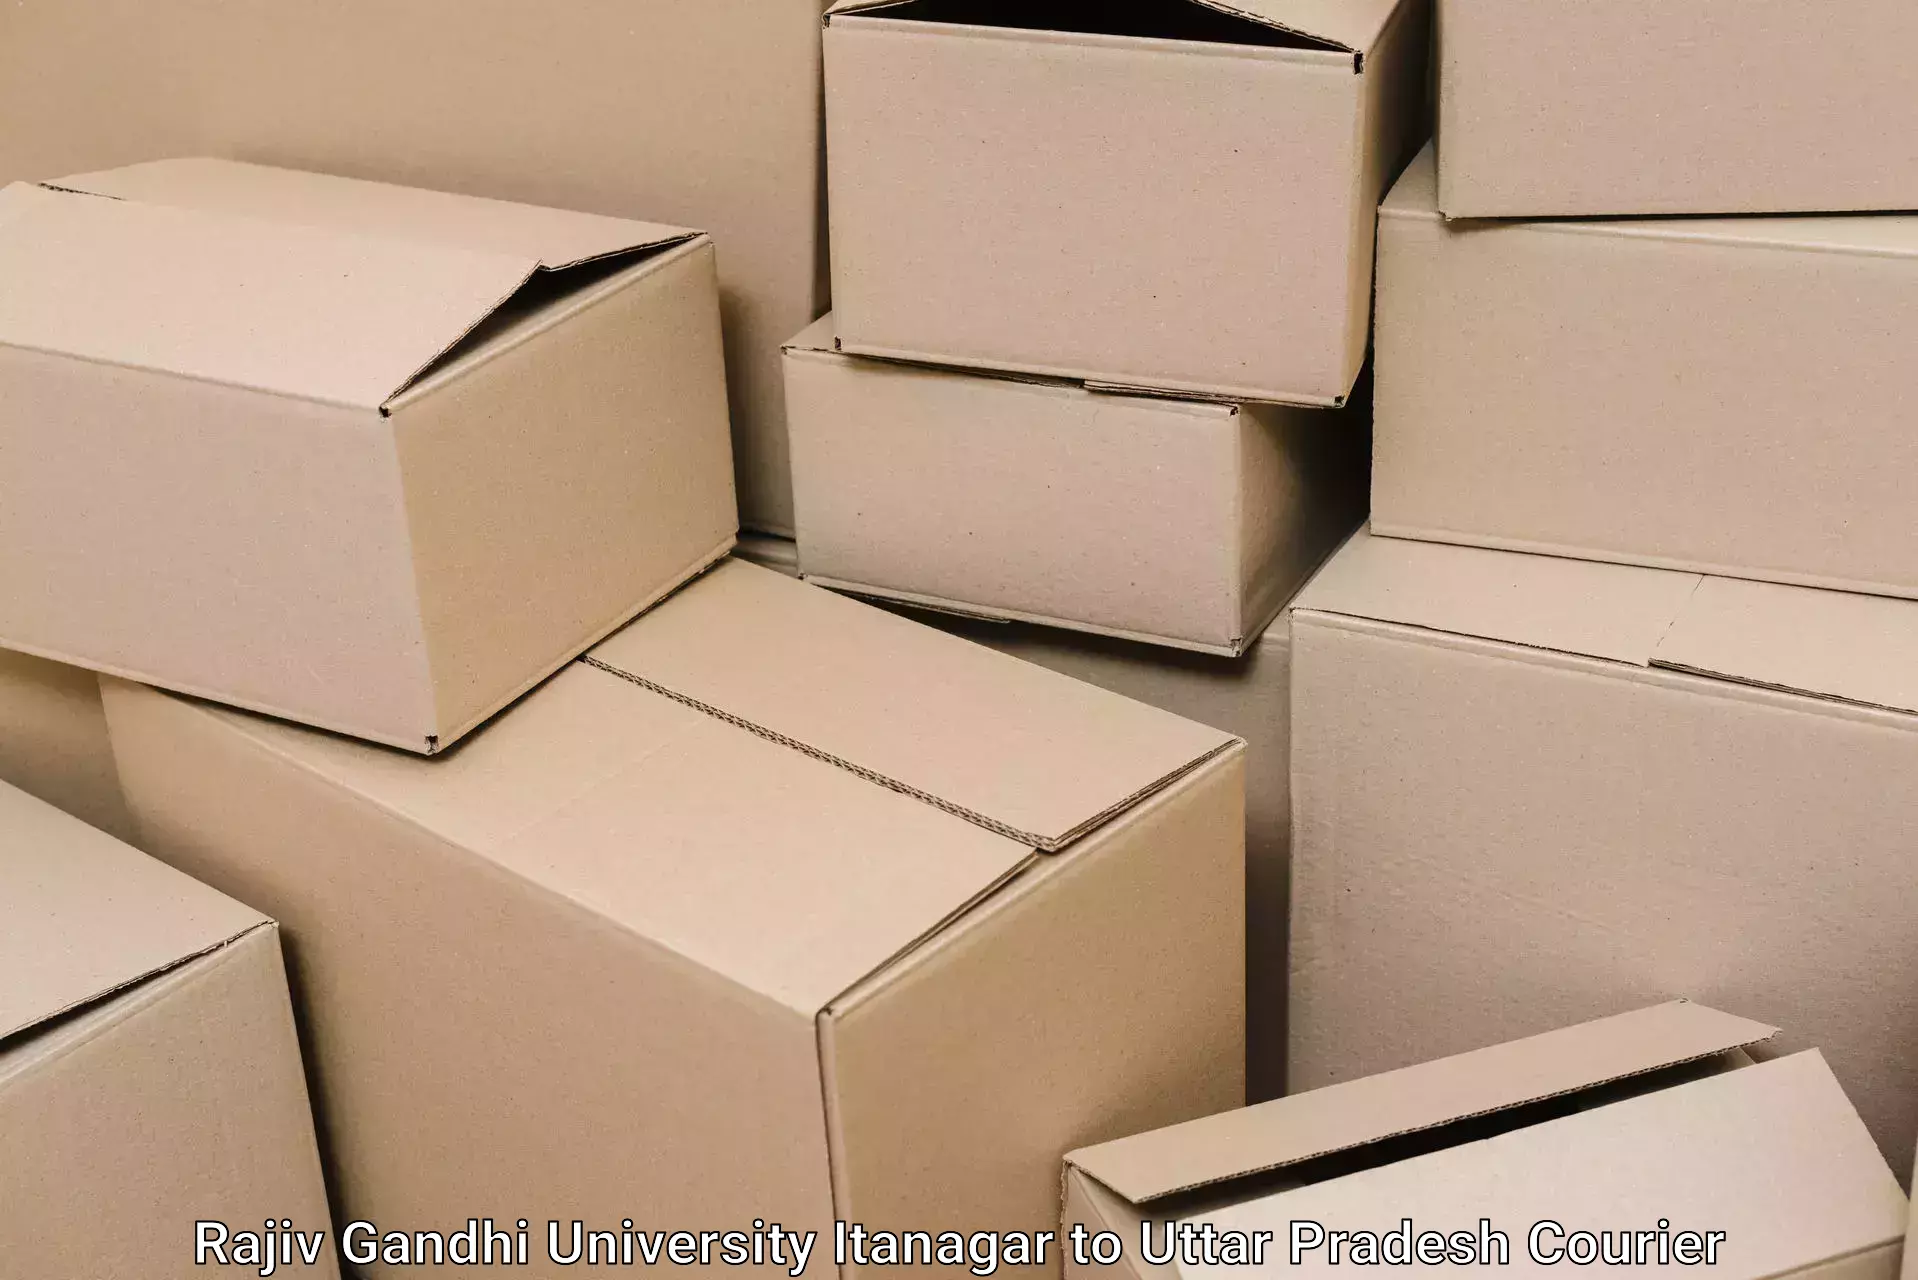 Stress-free household moving Rajiv Gandhi University Itanagar to Kerakat